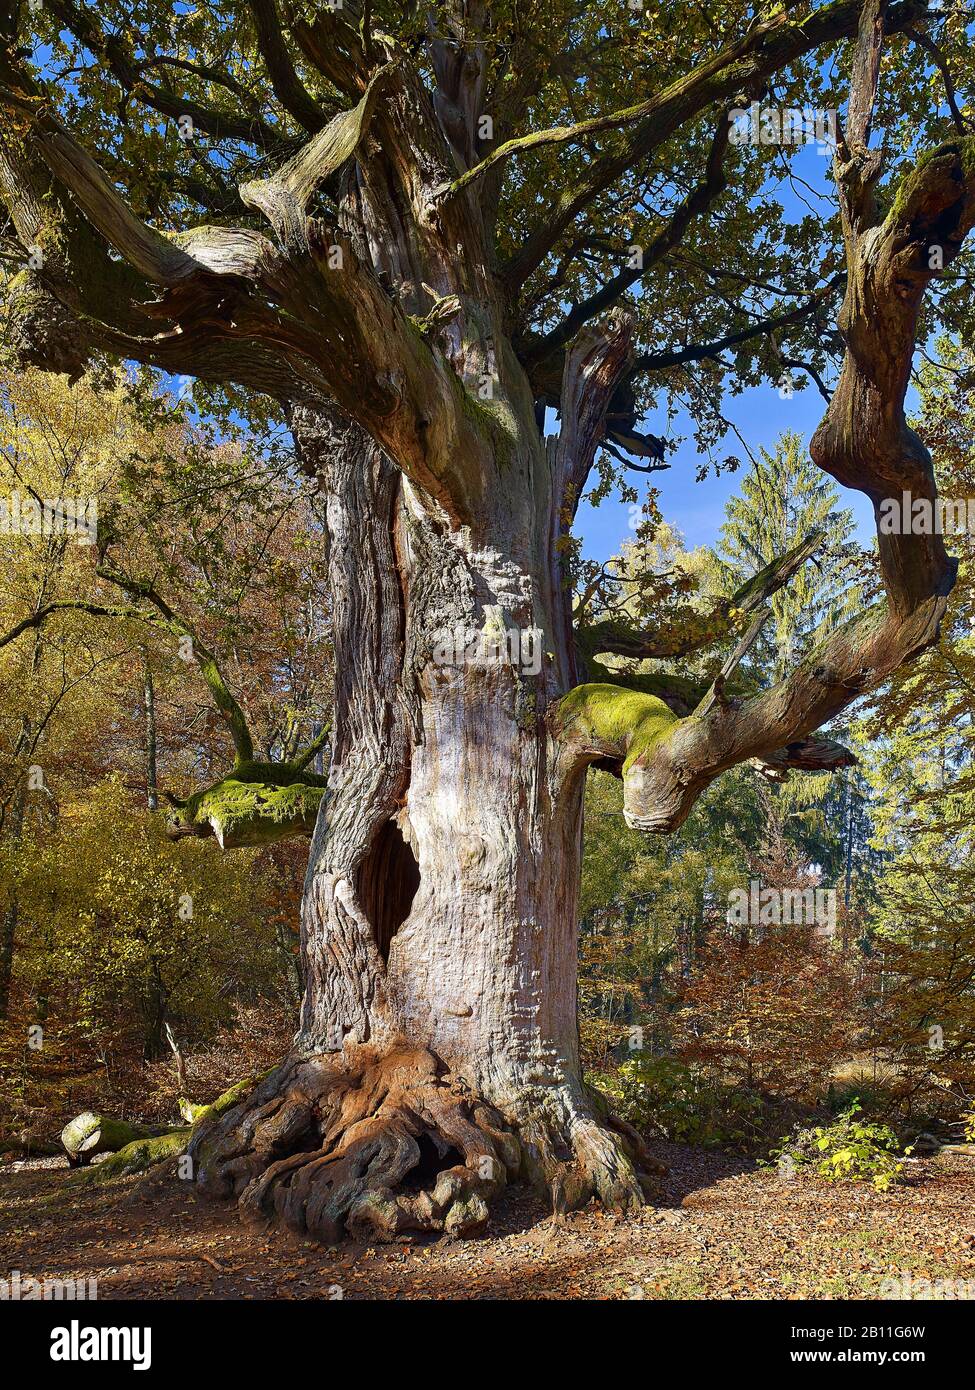 Cheminée chêne dans la réserve naturelle Urwald Sababurg, Hofgeismar, Hessen, Allemagne Banque D'Images